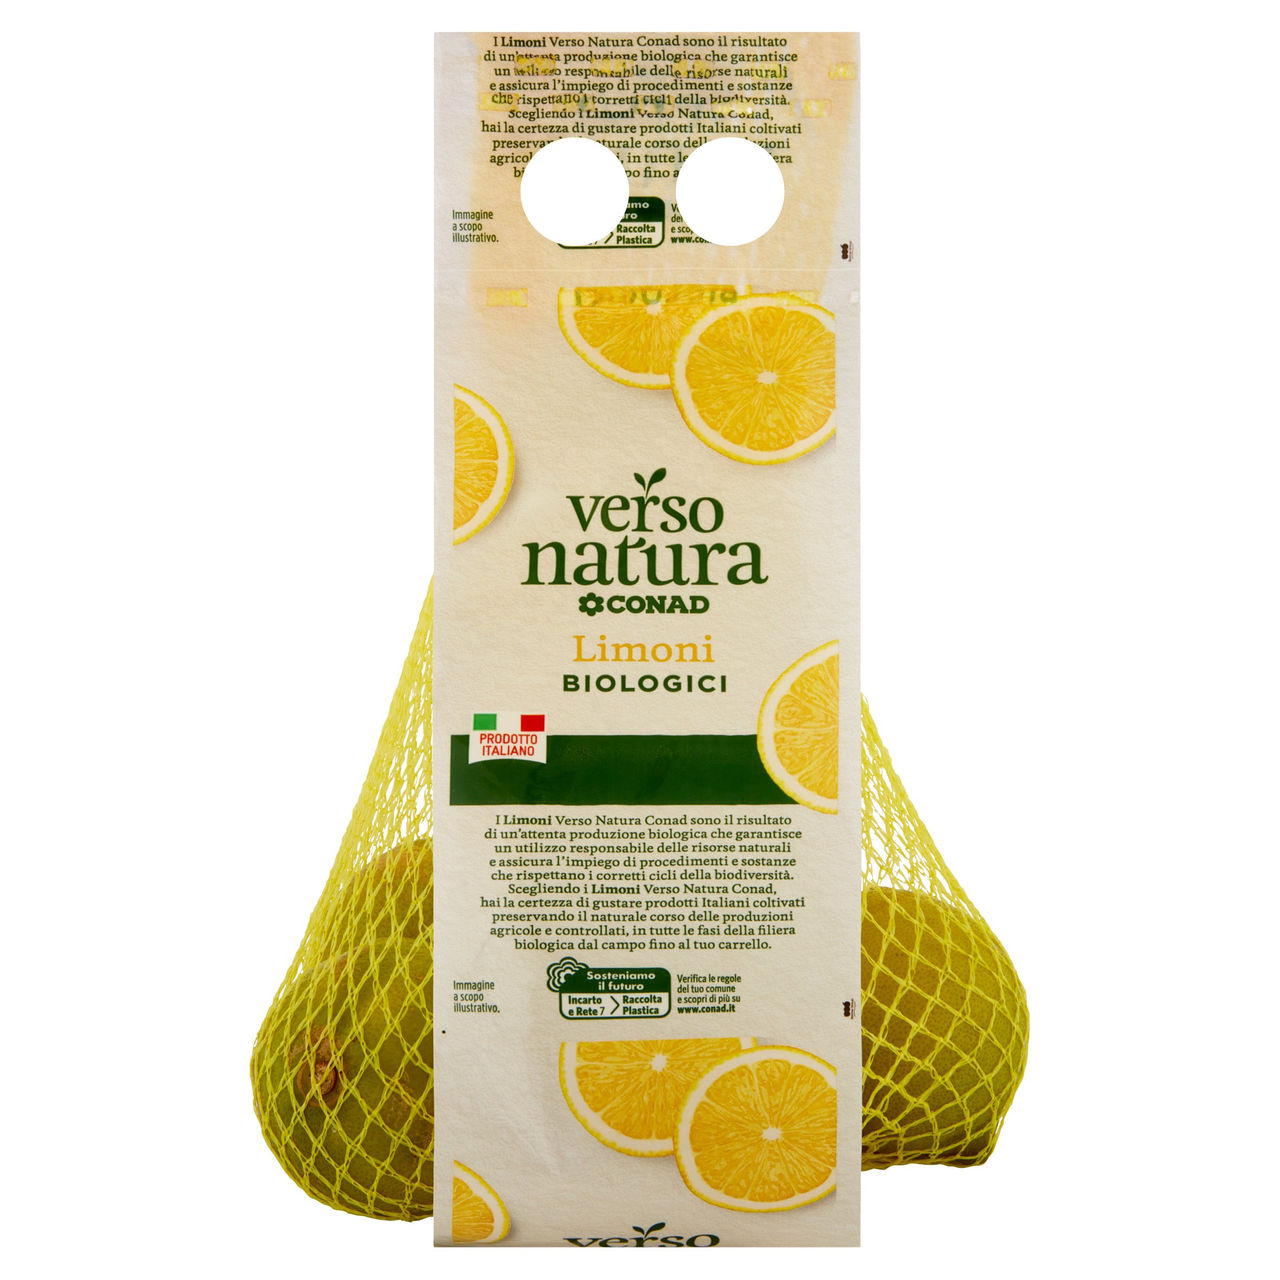 CONAD VERSO NATURA Limoni biologici Bianchetto Italia Cal. 5 0,500 kg